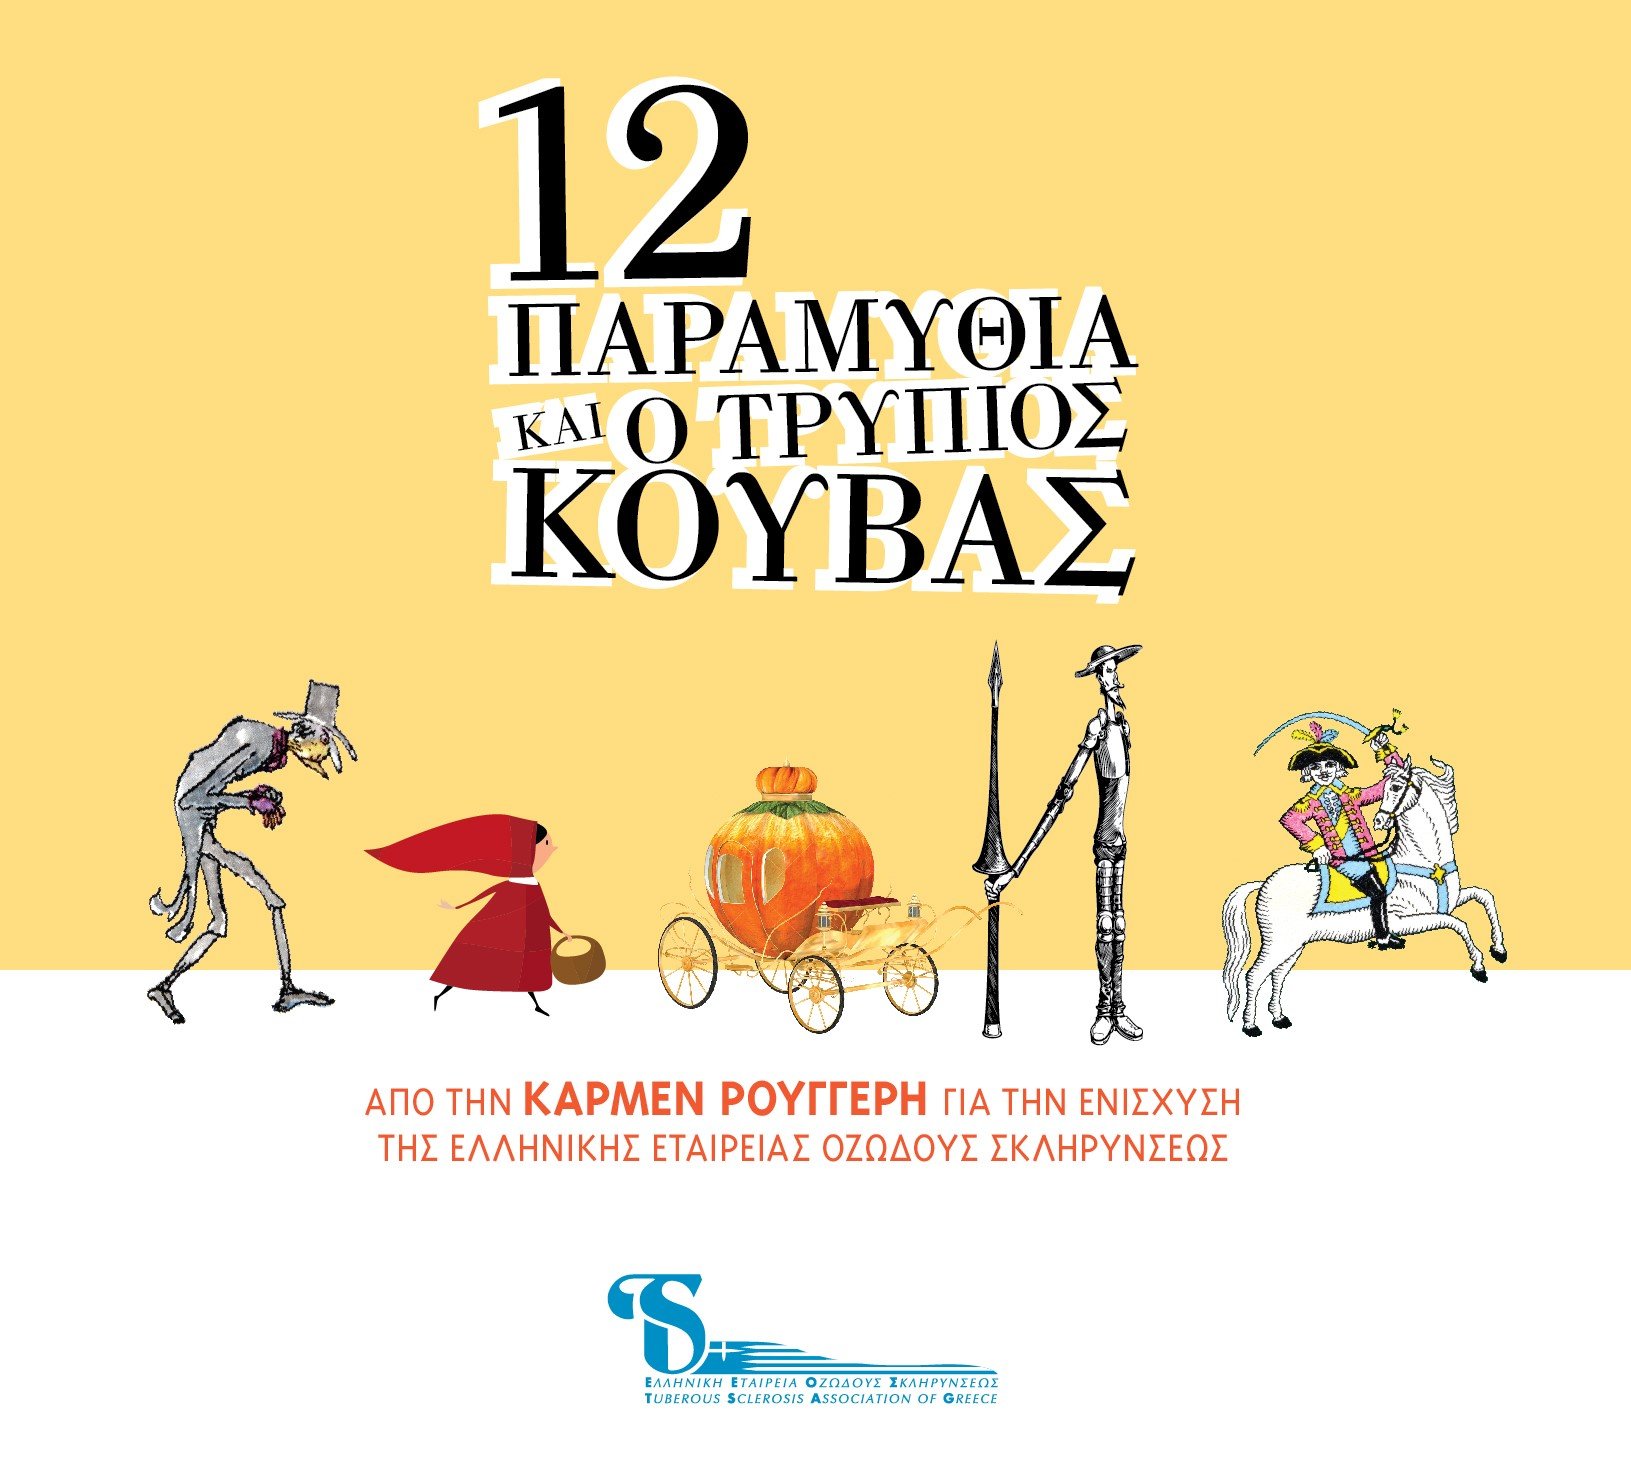 Ειδική έκδοση CD από την Κάρμεν Ρουγγέρη σε συνεργασία με την Novartis Oncology για την ενίσχυση της Ελληνικής Εταιρείας Οζώδους Σκληρύνσεως